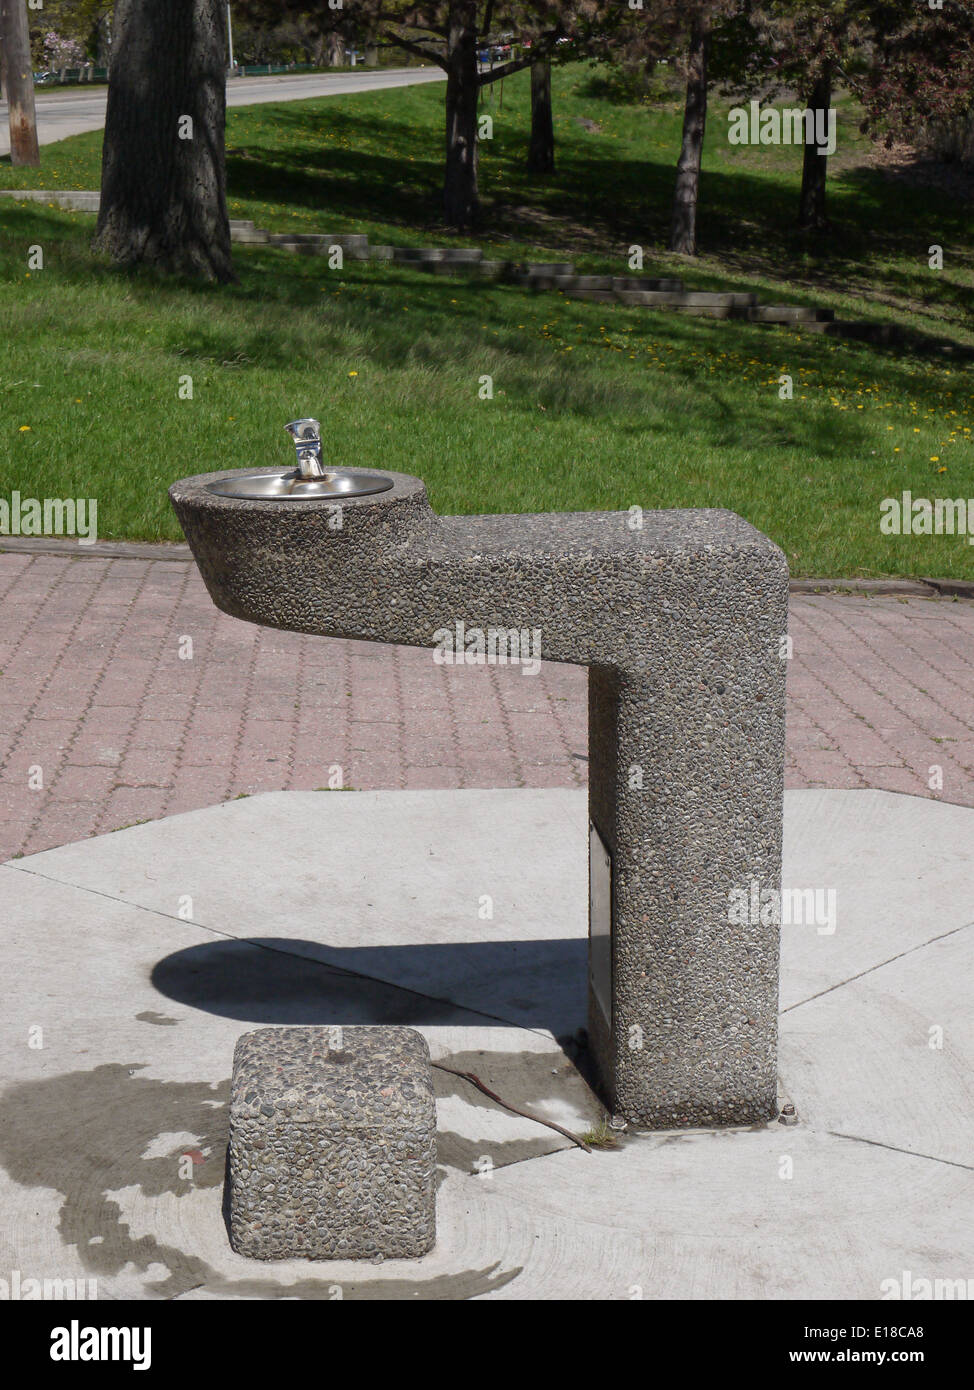 Boire de l'eau robinet d'été, fontaine Banque D'Images